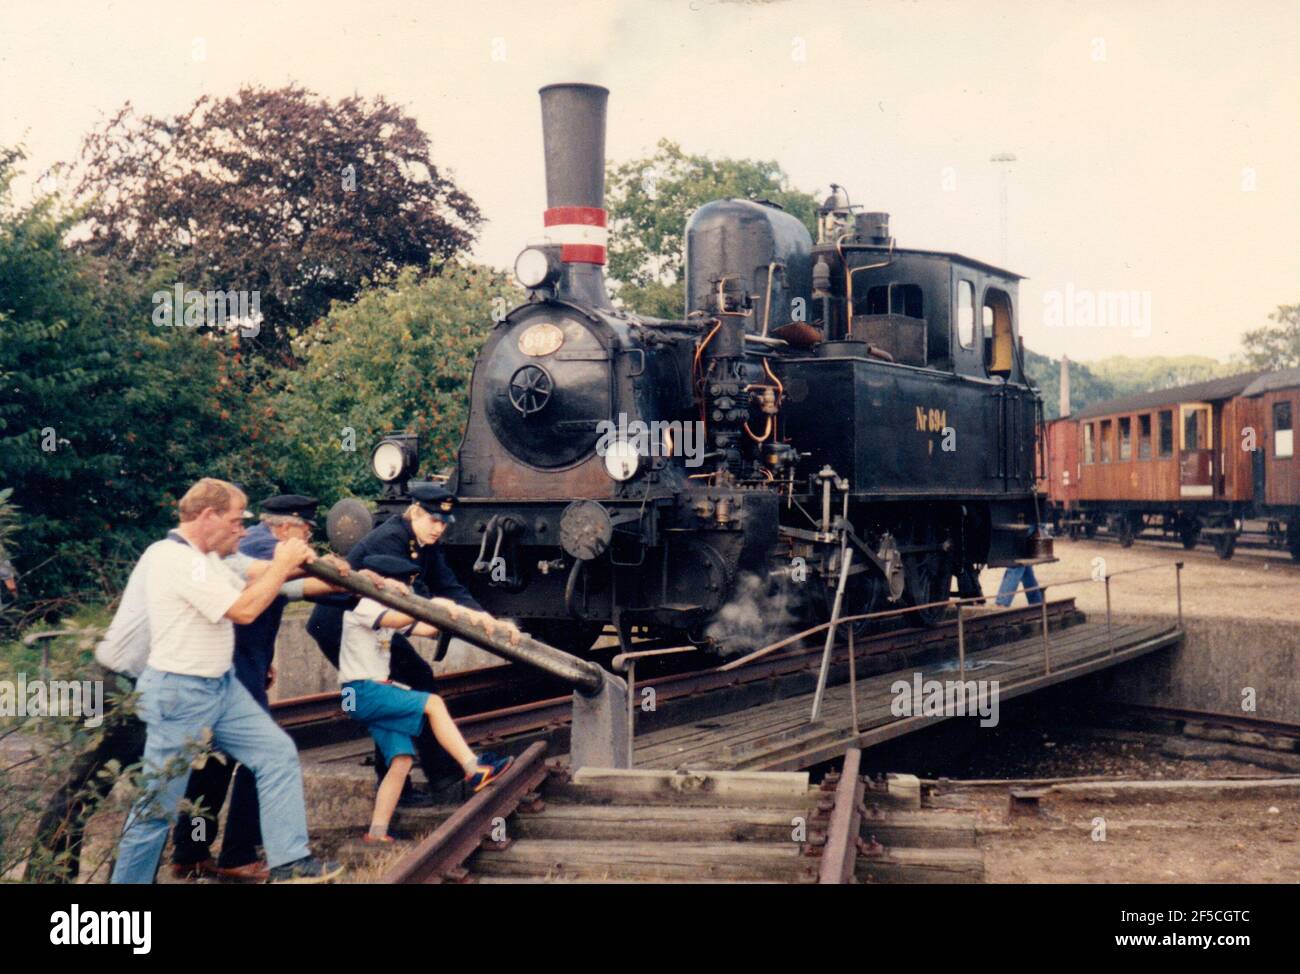 Vejle, Dinamarca - alrededor del año 1985: Los entusiastas del ferrocarril de la vendimia da vuelta a la locomotora de vapor F694 en la turnable pequeña. Foto de stock